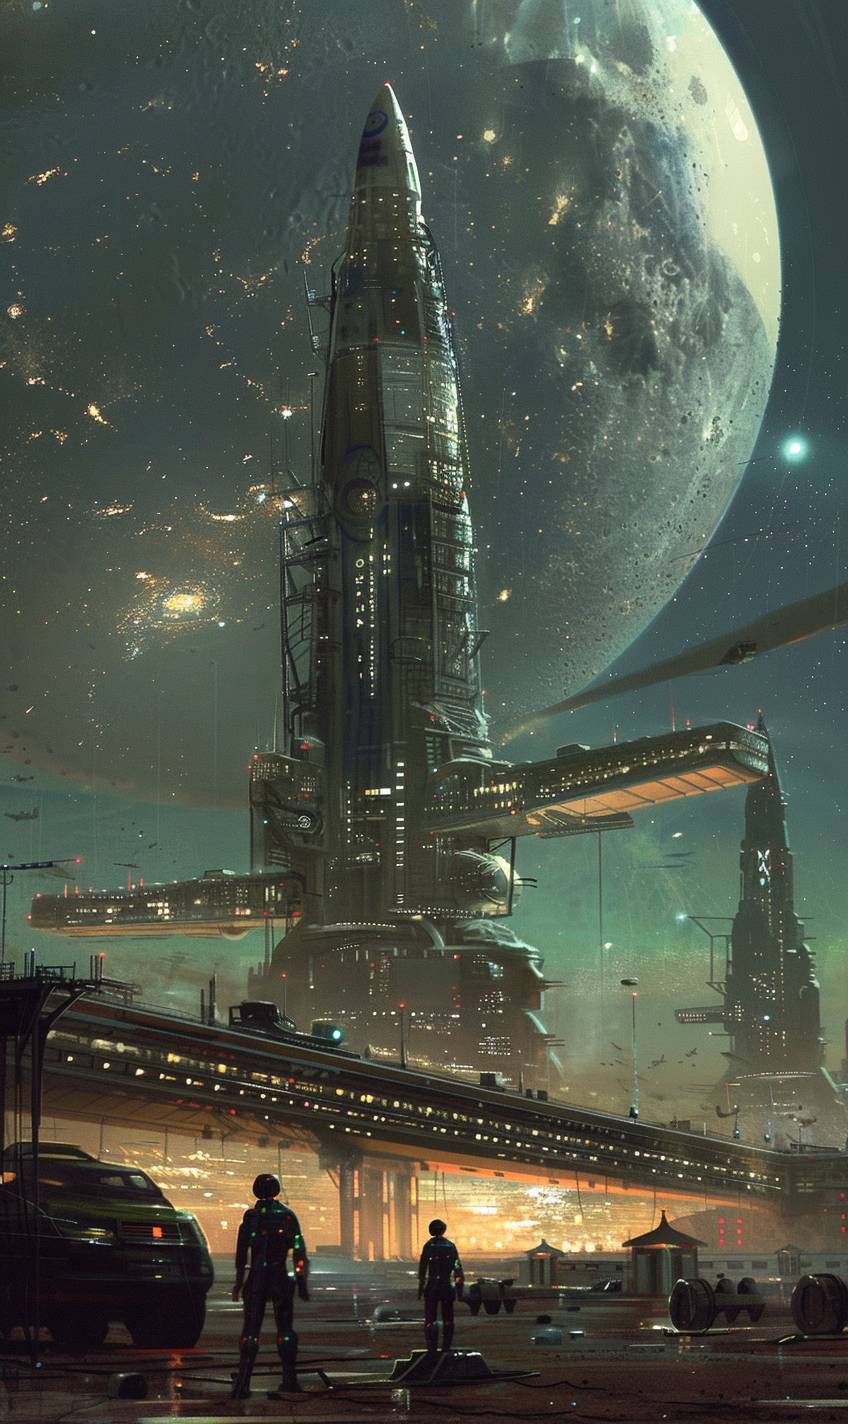 Space Port by Ivan Kramskoi